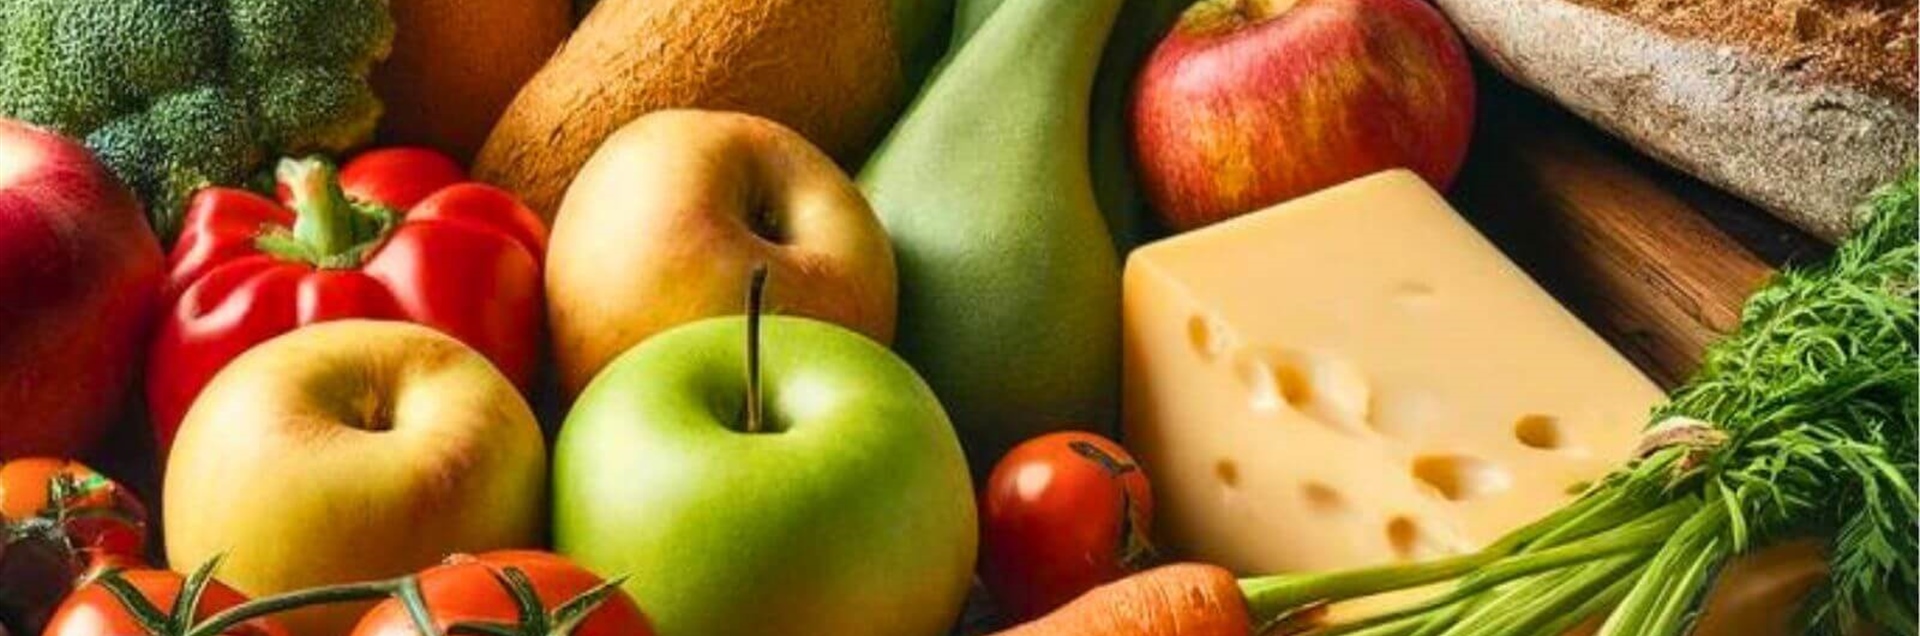 유기농 식품을 먹는 이유: 제로 킬로미터 제품을 선택하는 이유